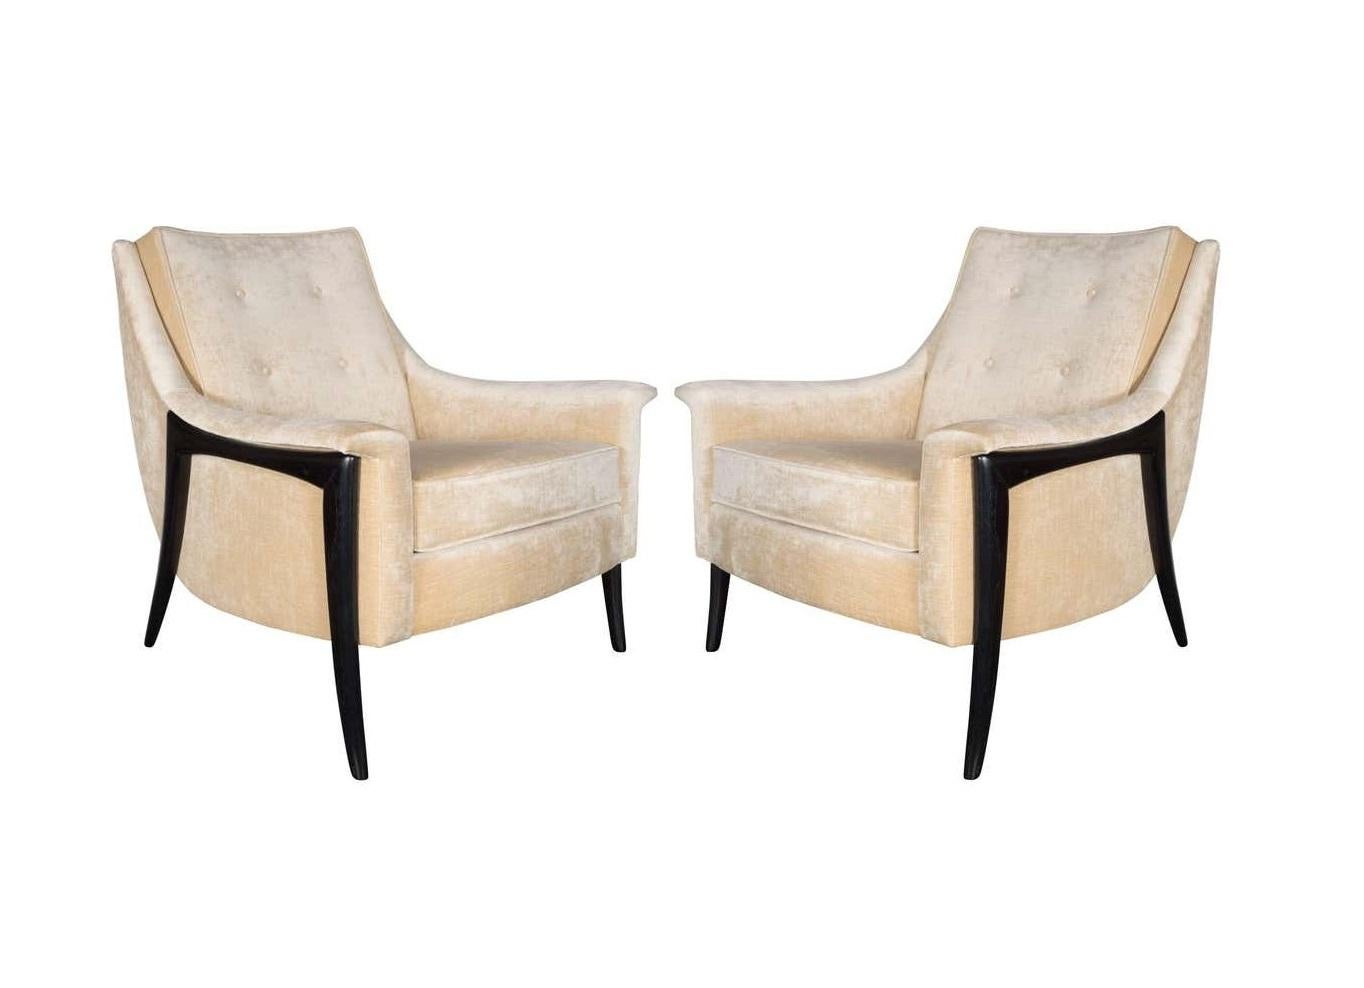 Dieses atemberaubende Paar von Kroehler Avant Designs. Die geschmeidig geschwungenen Rückenlehnen führen zu gepolsterten Armlehnen mit abnehmbaren Sitzkissen, die auf skulptural geformten, gespreizten Beinen stehen. Die Beine sind aus Walnussholz